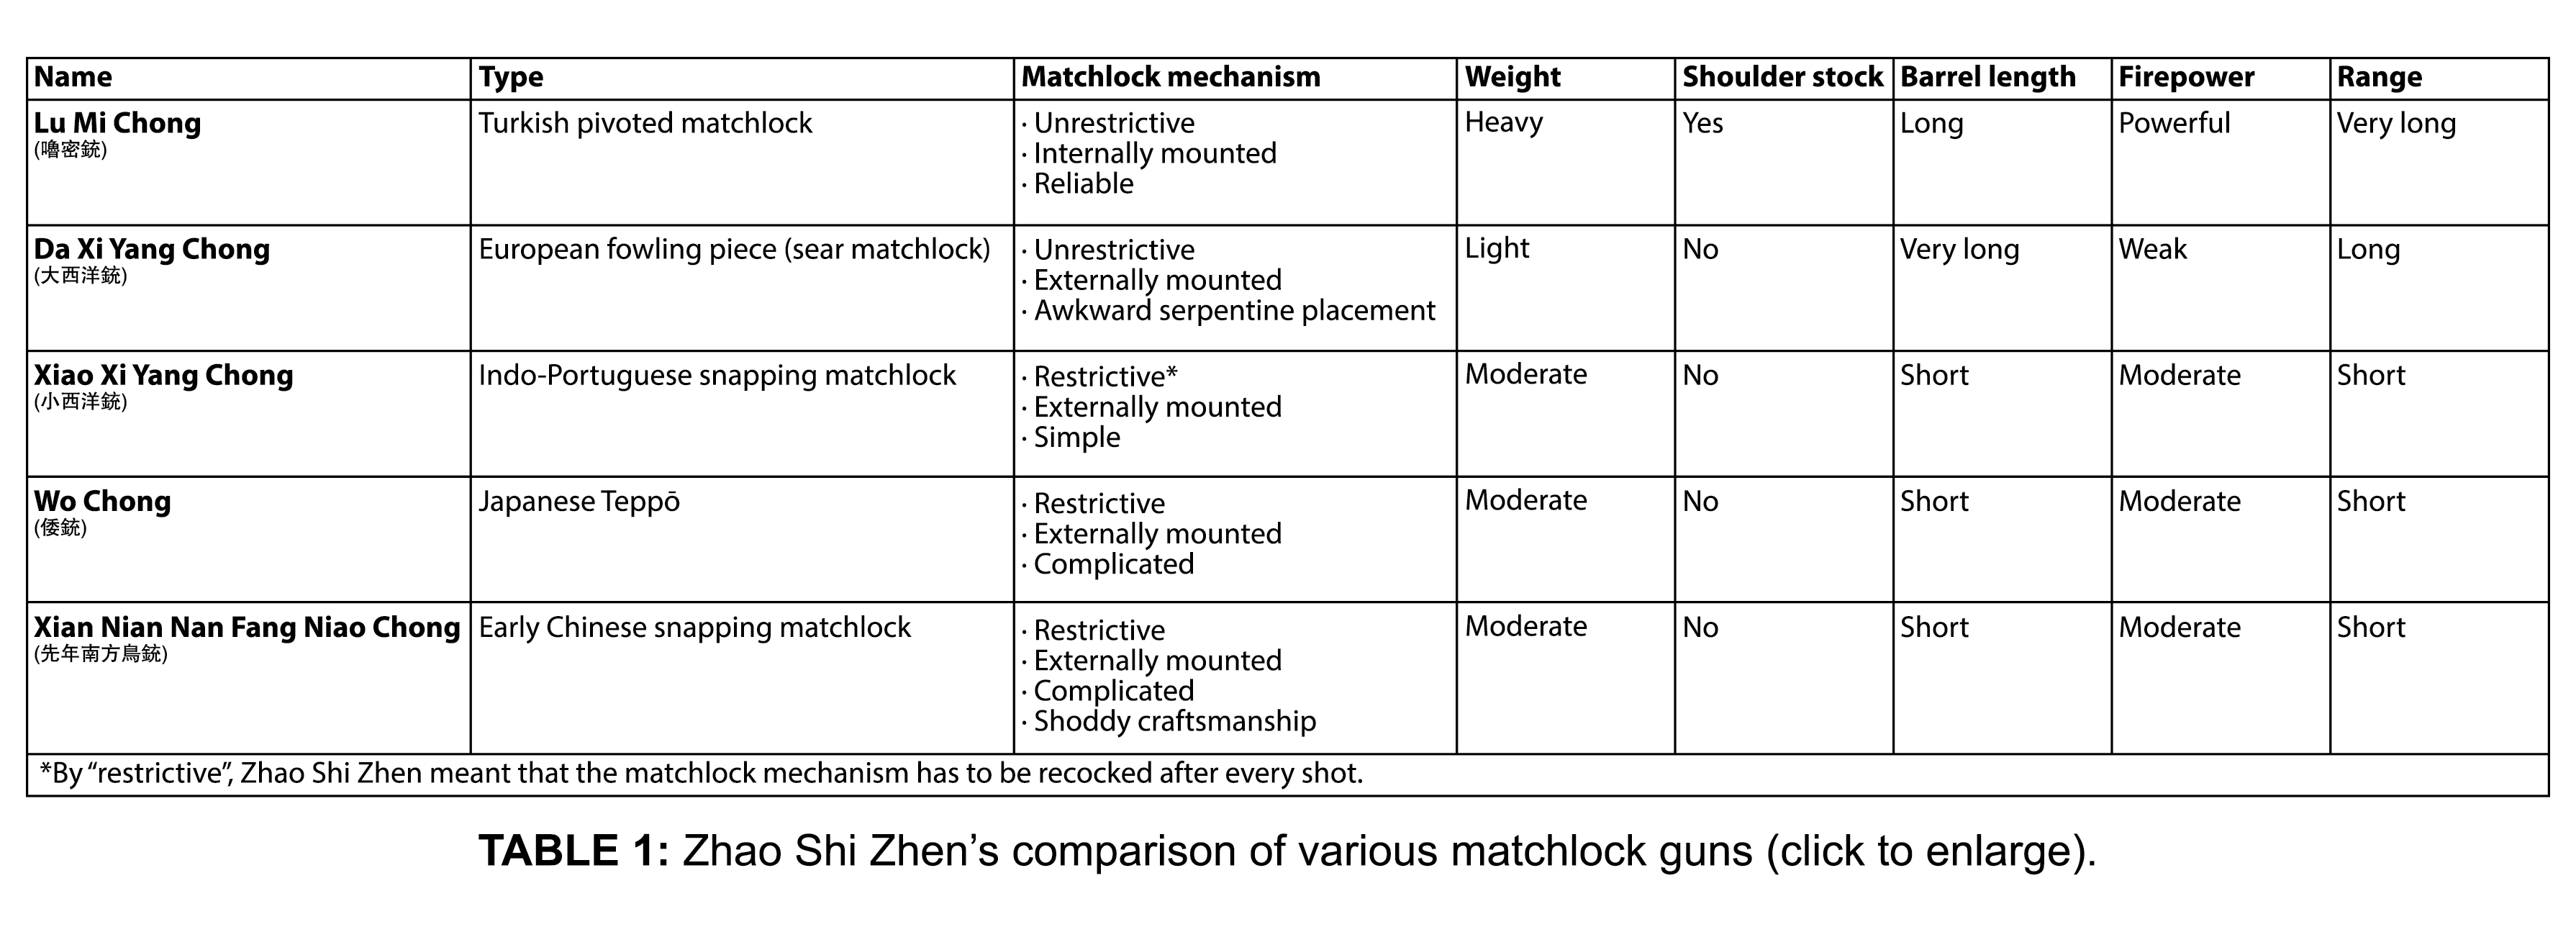 Zhao_Shi_Zhen_Matchlock_Comparison.jpg